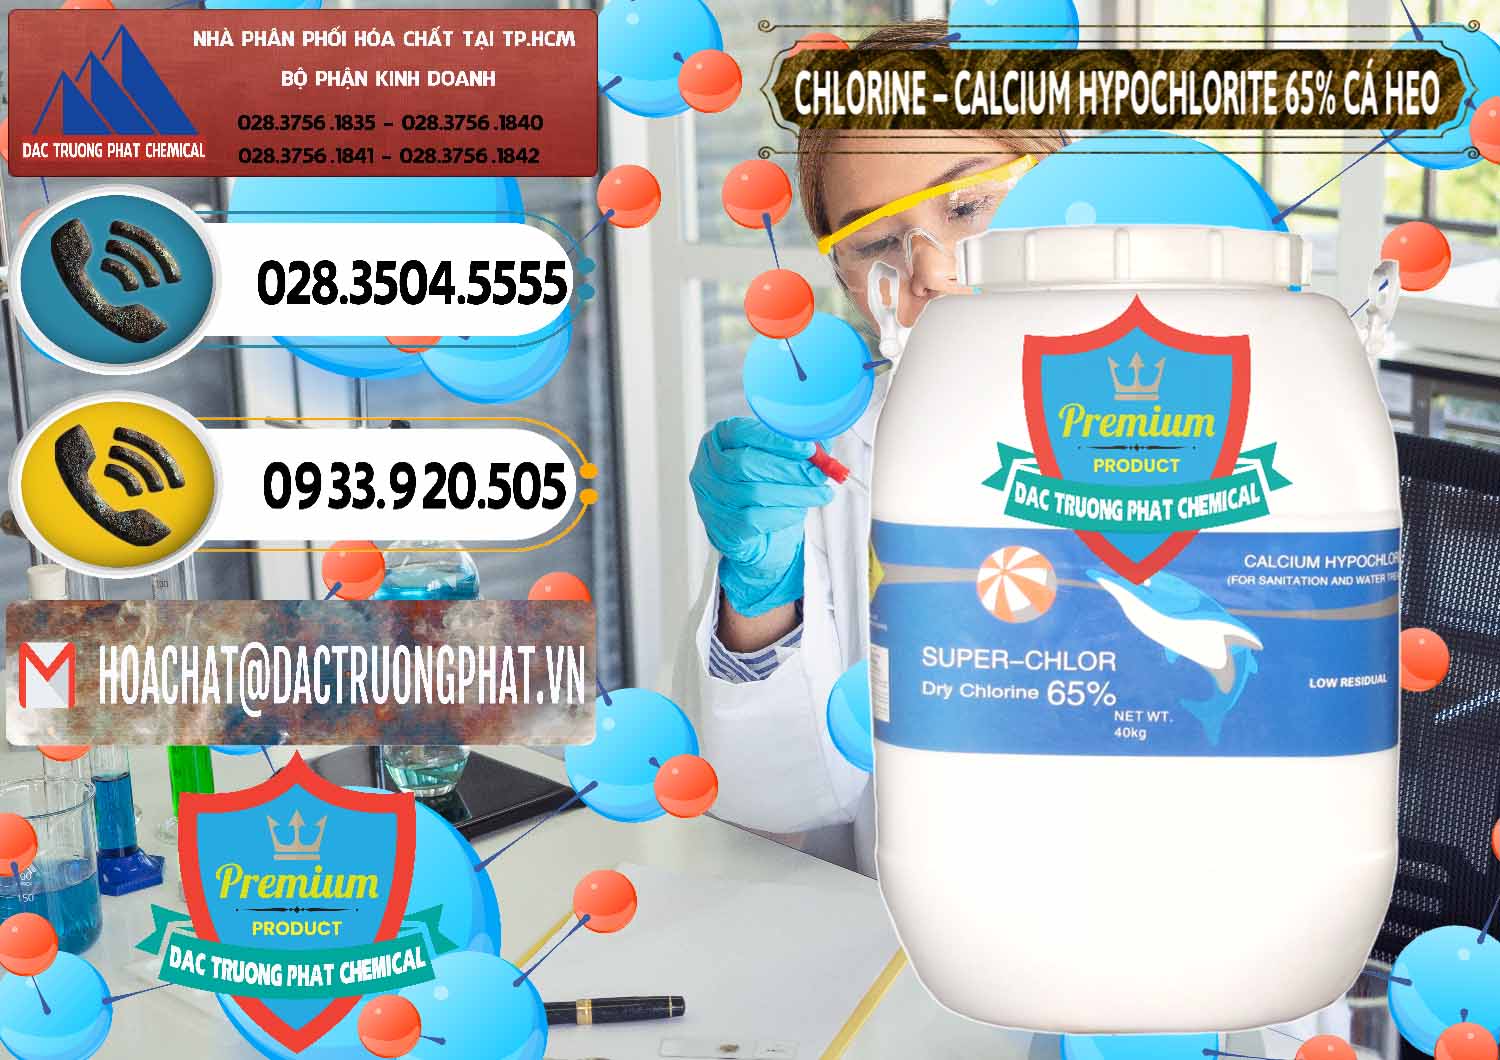 Đơn vị bán - phân phối Clorin - Chlorine Cá Heo 65% Trung Quốc China - 0053 - Cung cấp ( kinh doanh ) hóa chất tại TP.HCM - hoachatdetnhuom.vn